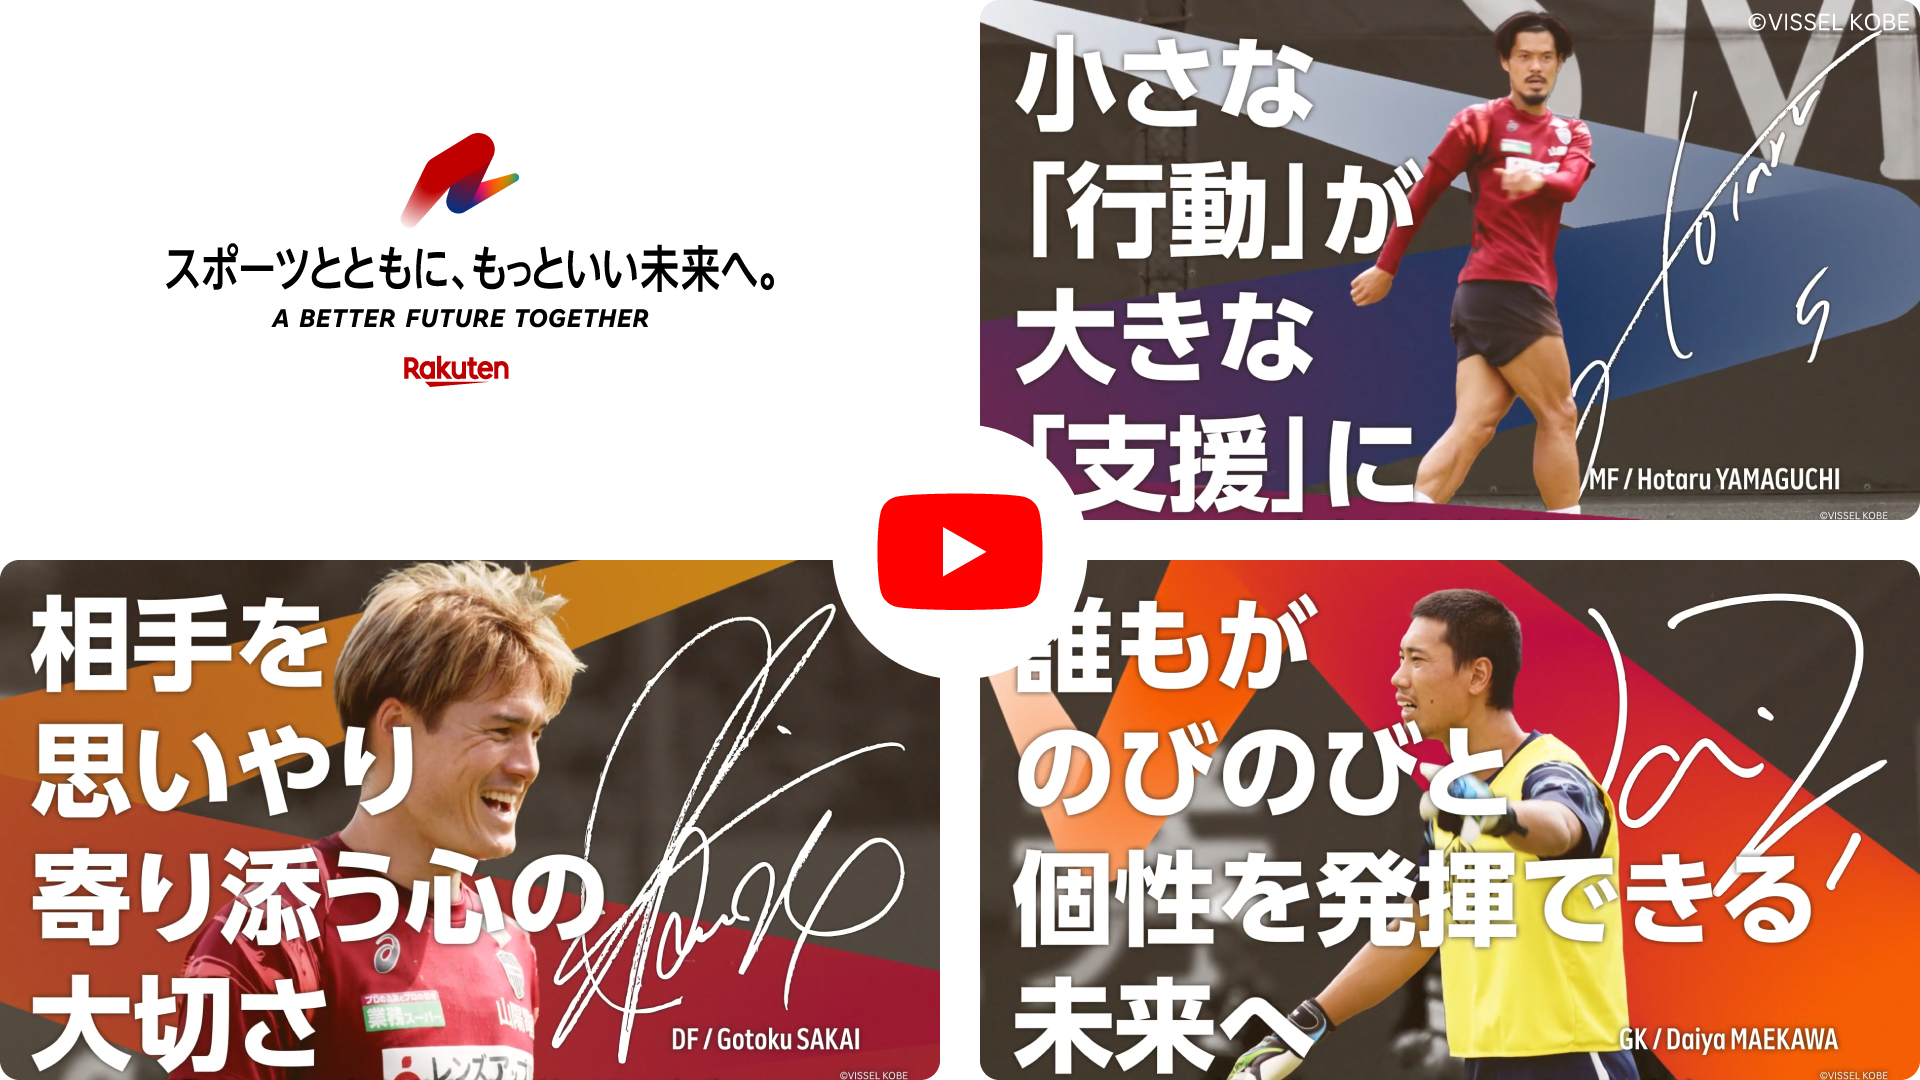 ヴィッセル神戸 特別動画「サポーターとトモニ、もっといい未来へ。」イメージ